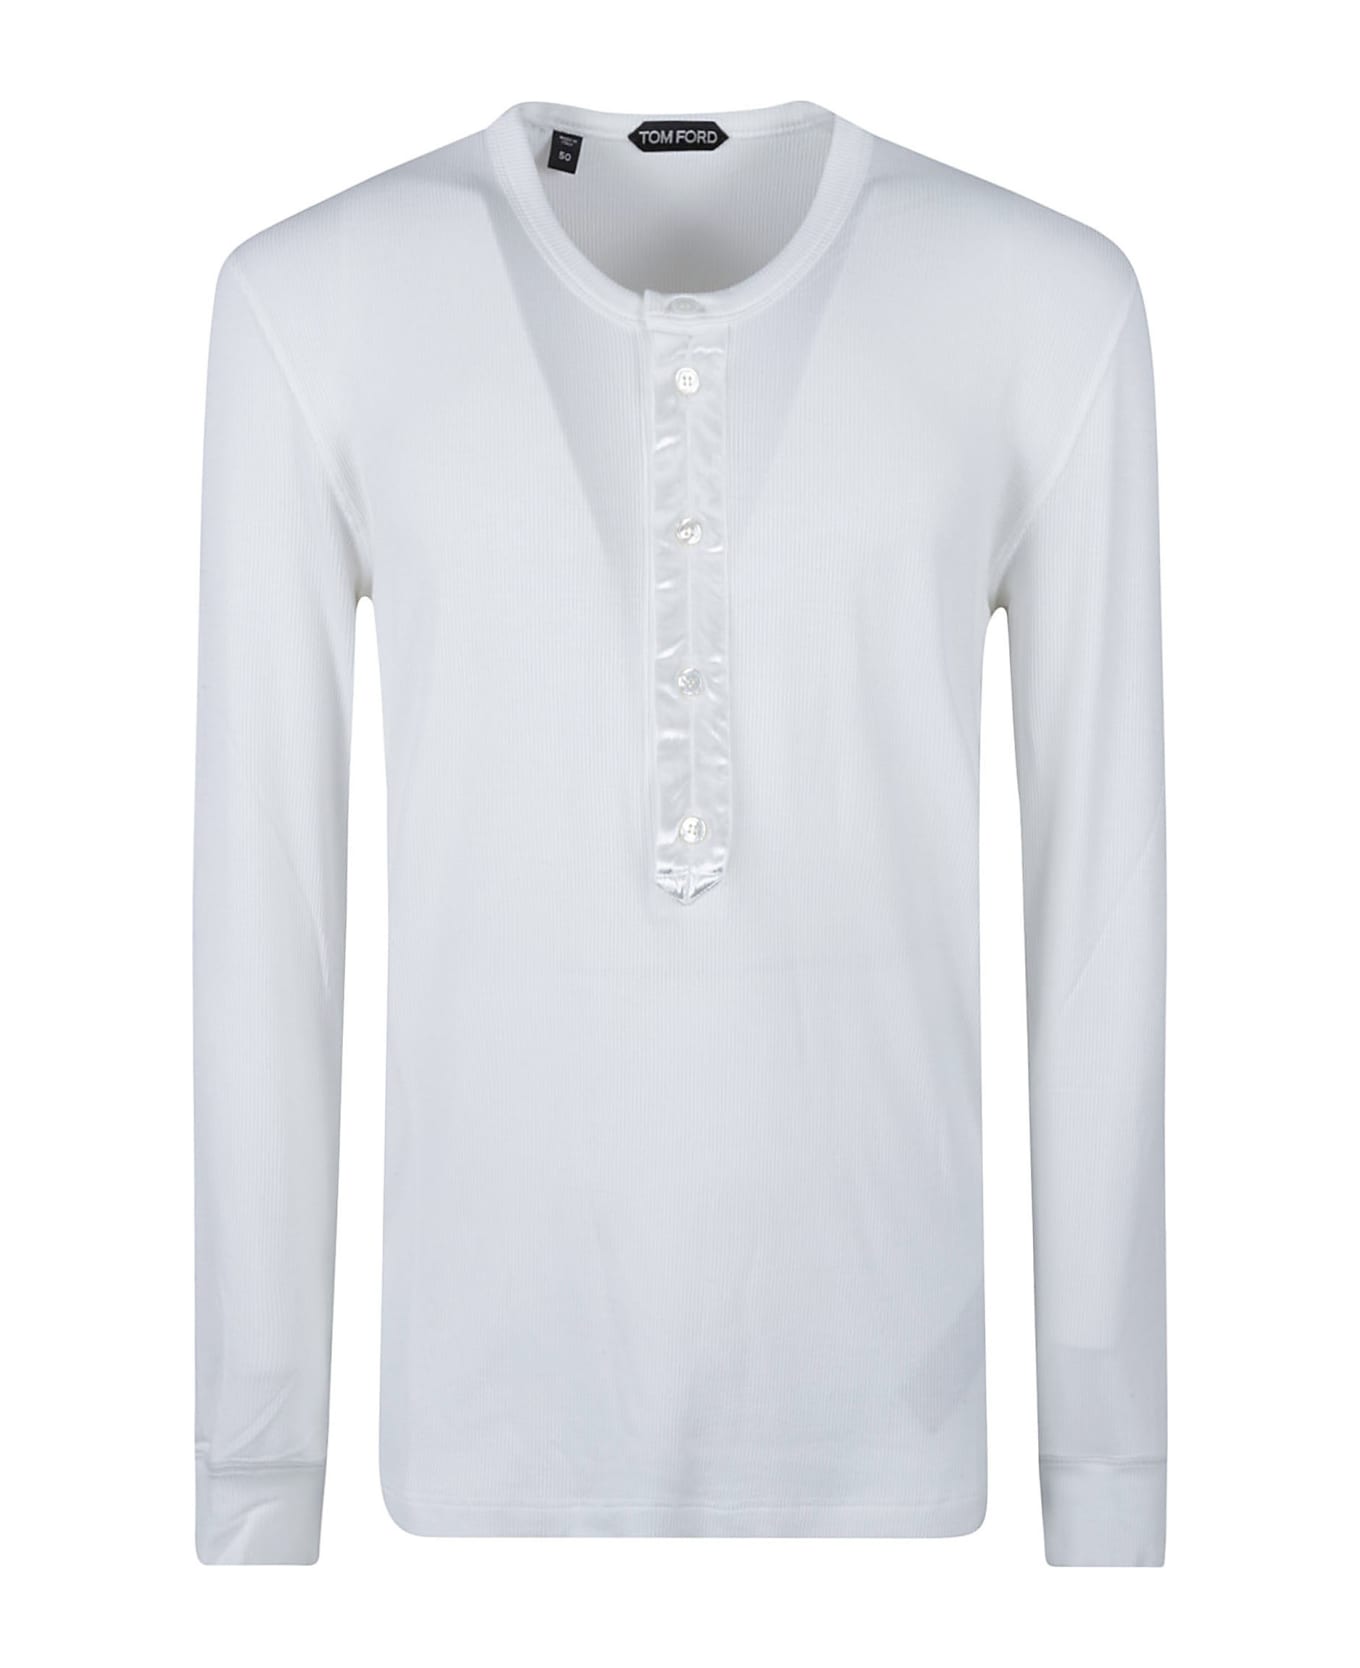 Tom Ford Long-sleeved T-shirt - White シャツ